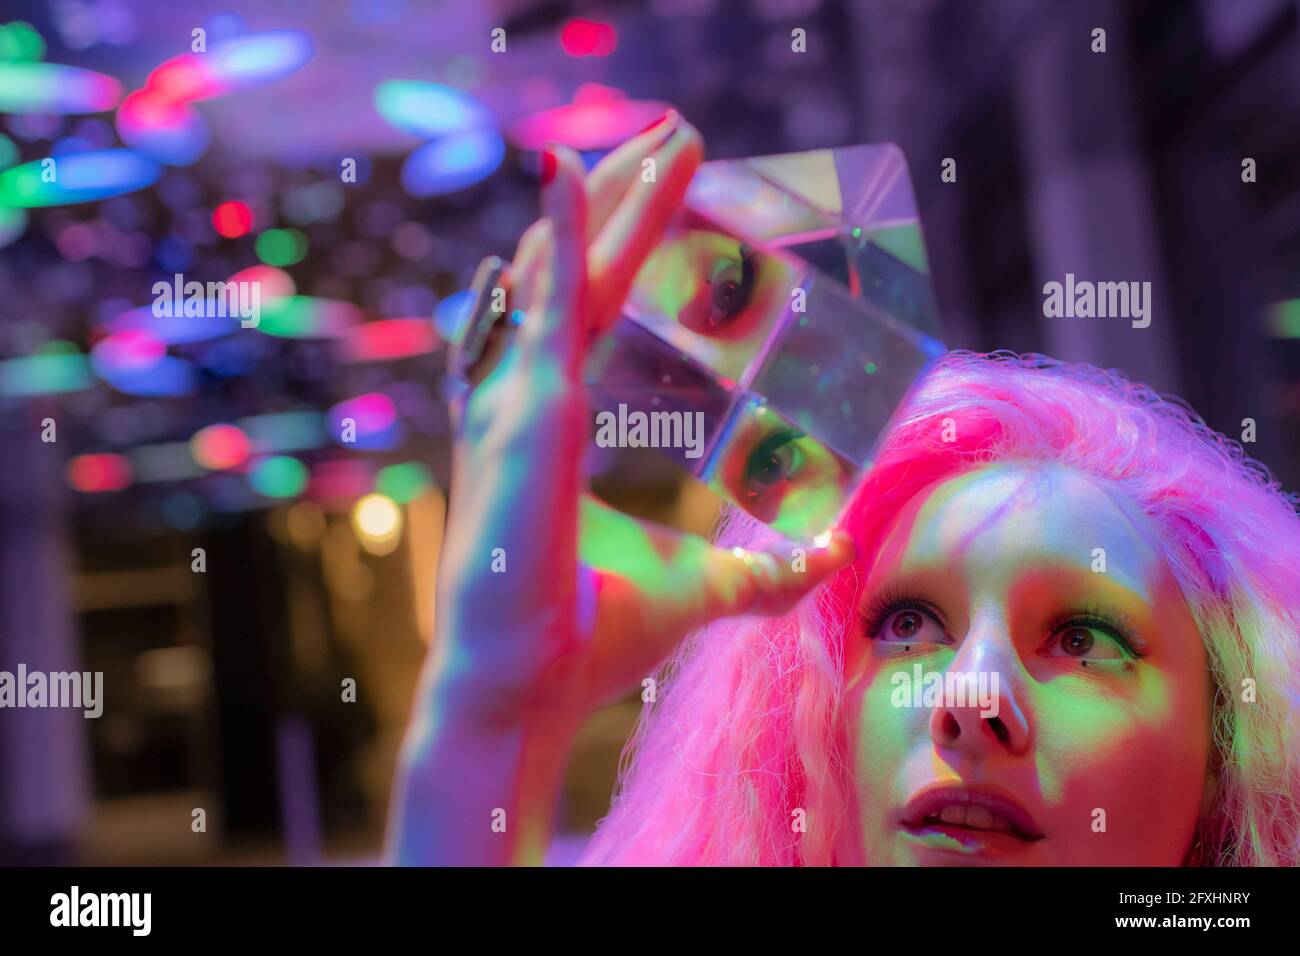 Frau mit rosafarbenem Haar, die zu einem dimensionalen Kristallwürfel aufschaut Stockfoto